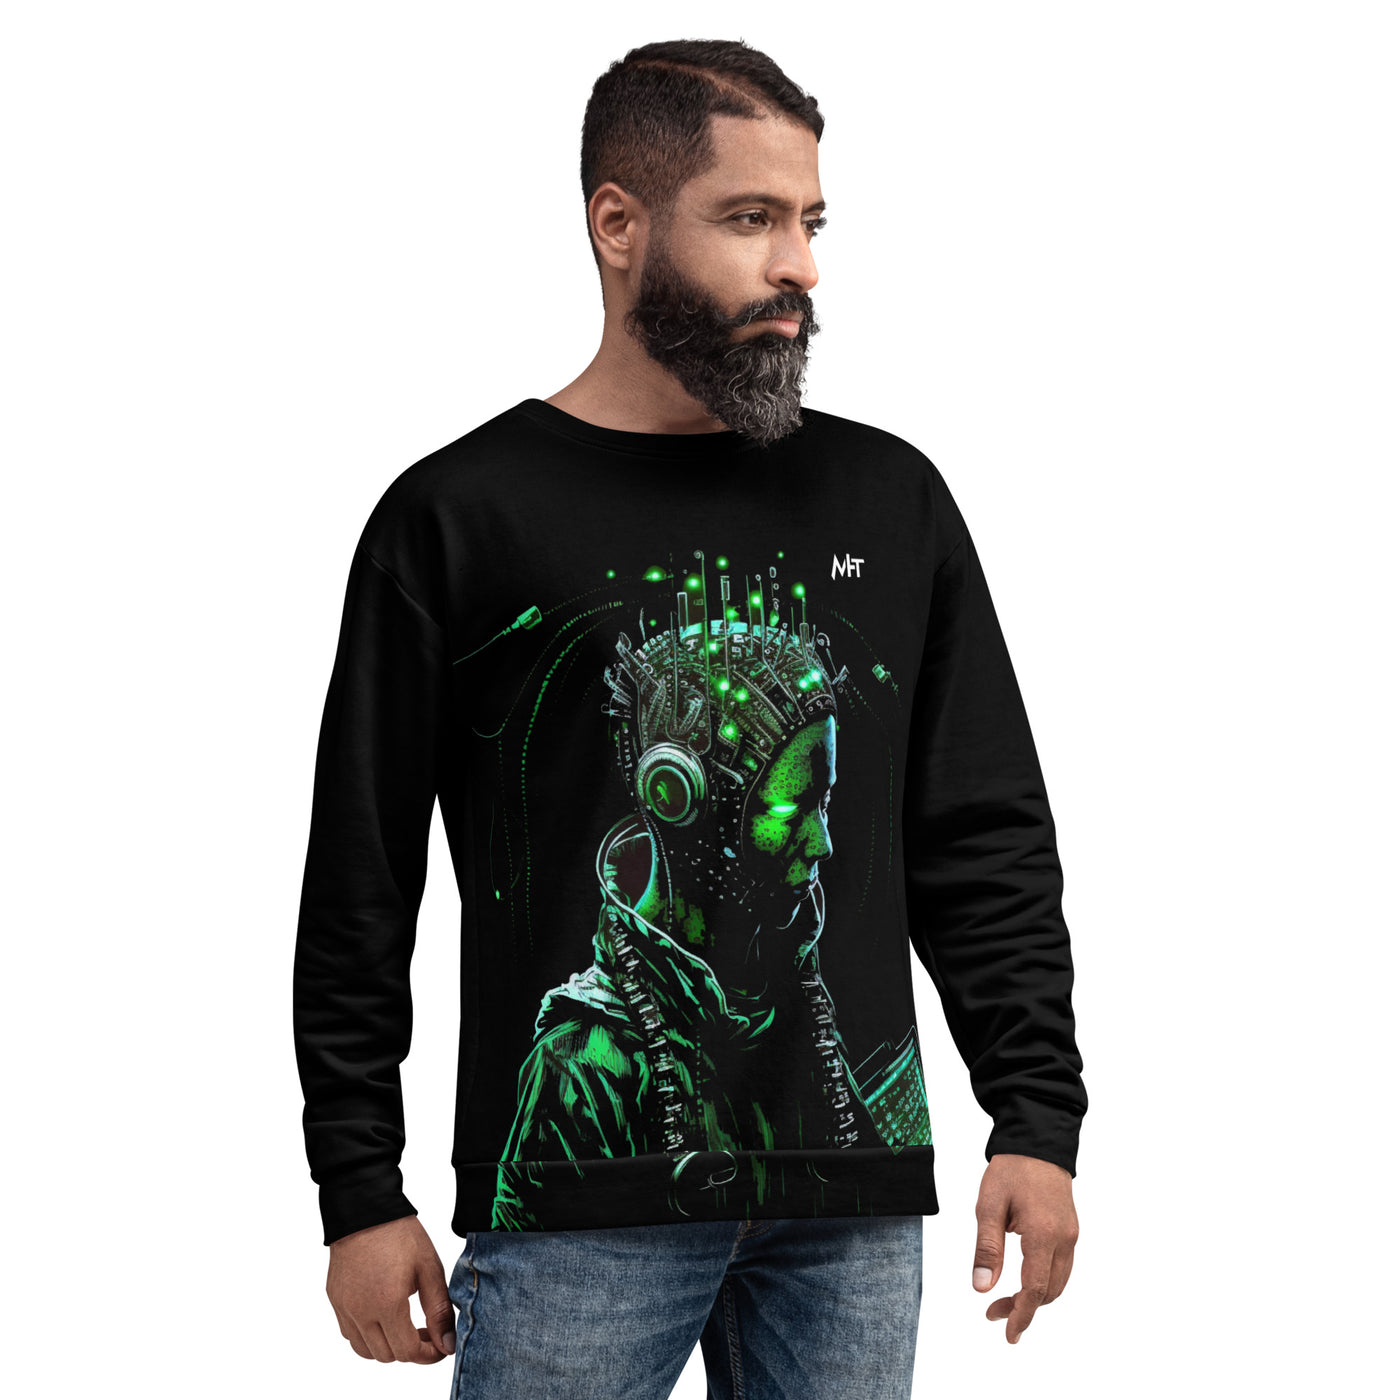 Cyberware assassin V12 - Unisex Sweatshirt